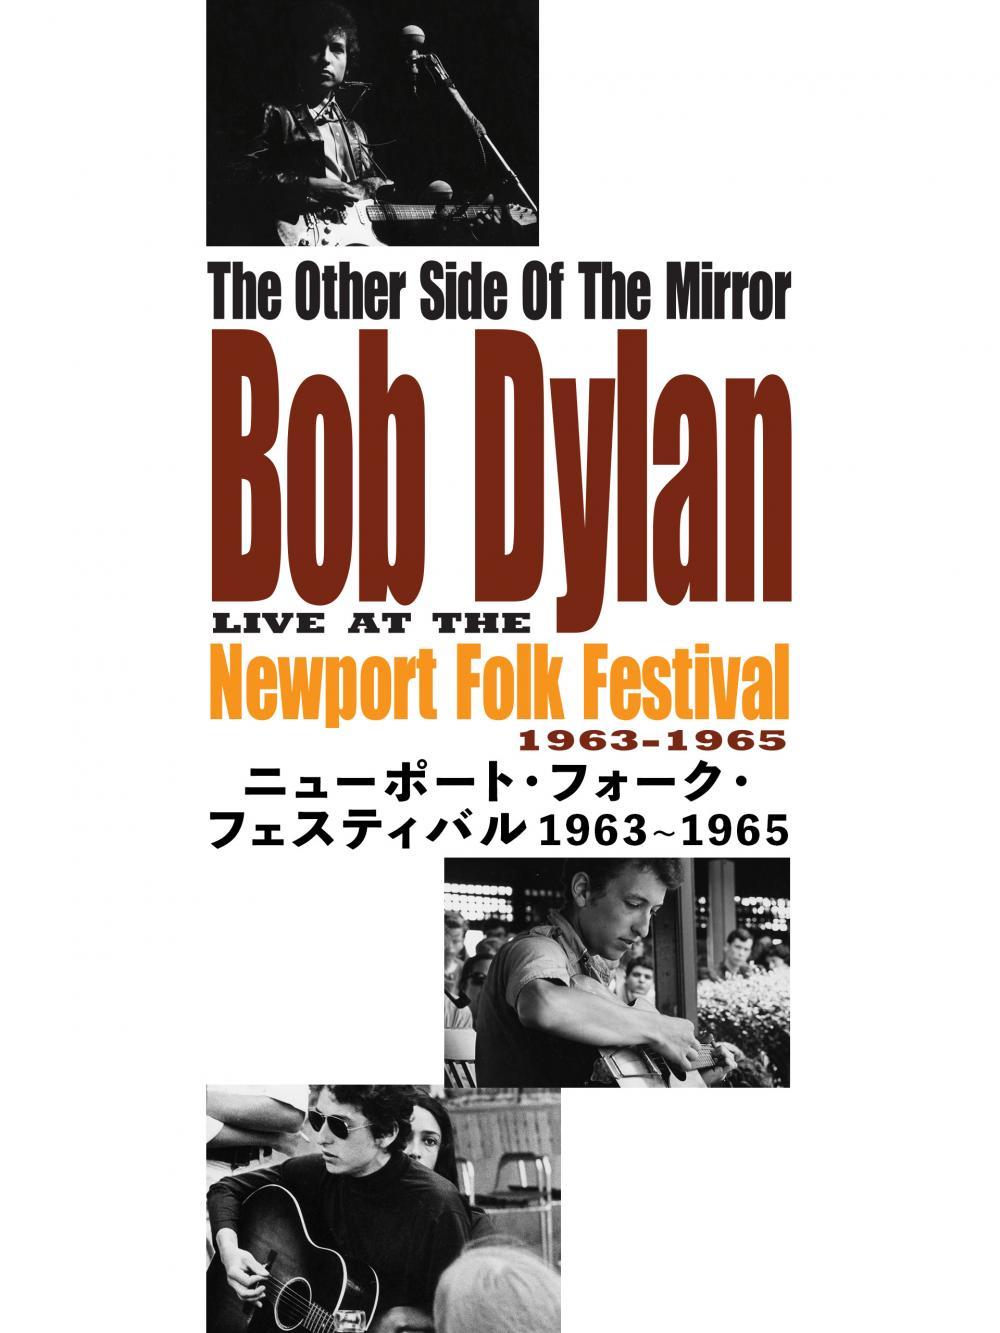 ニューポート・フォーク・フェスティバル 1963~1965 | ソニー 